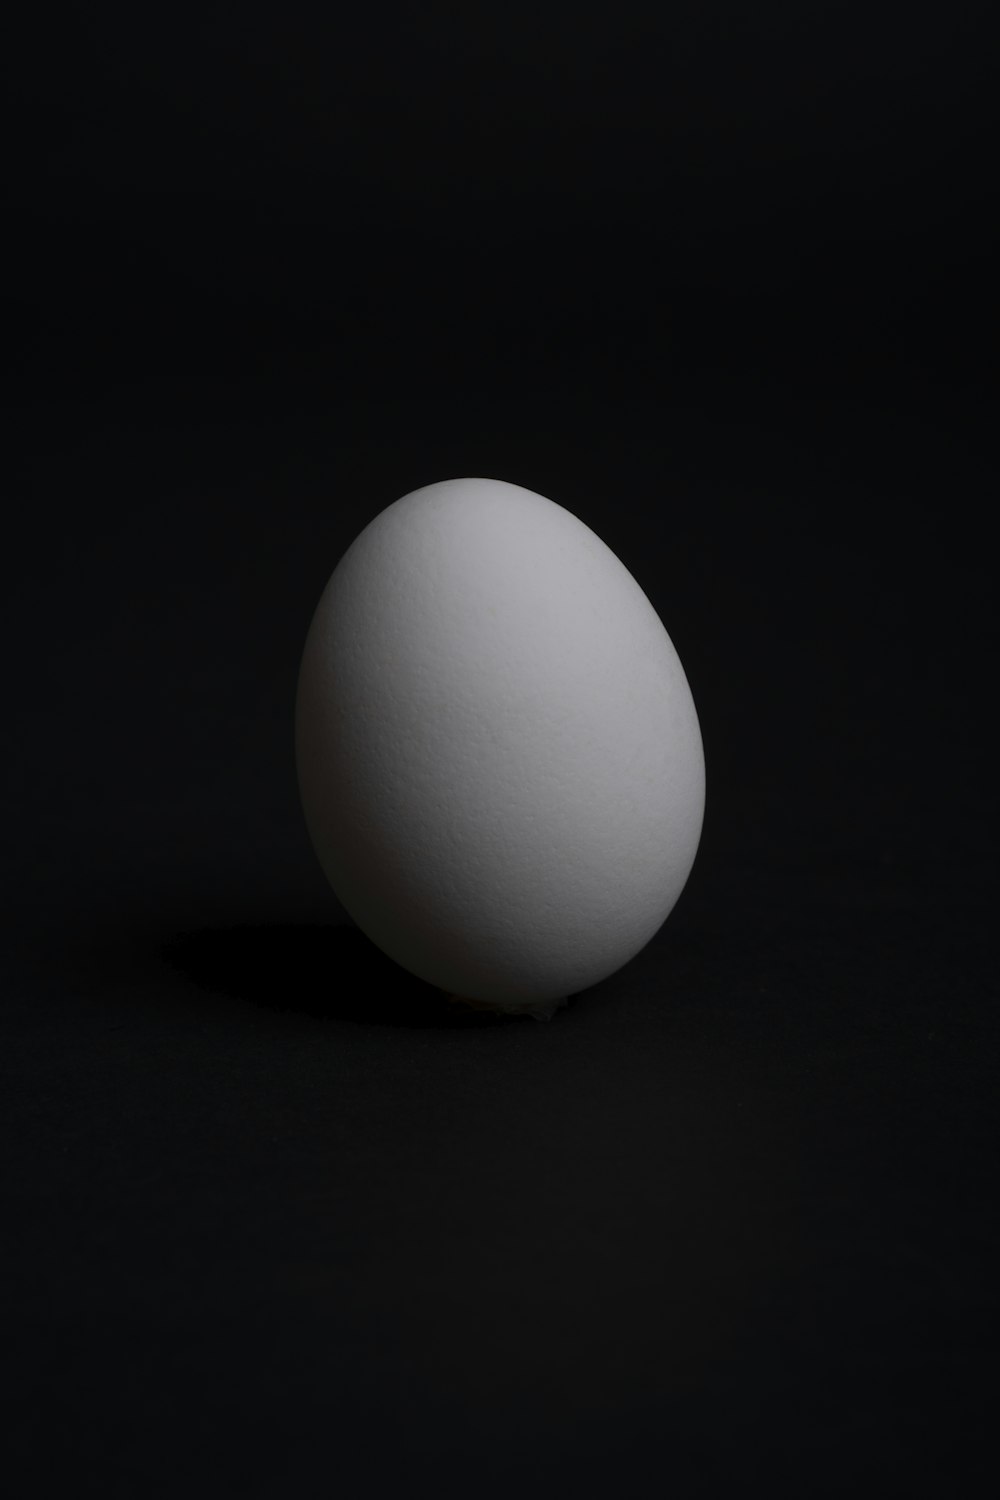 ovo branco na superfície preta